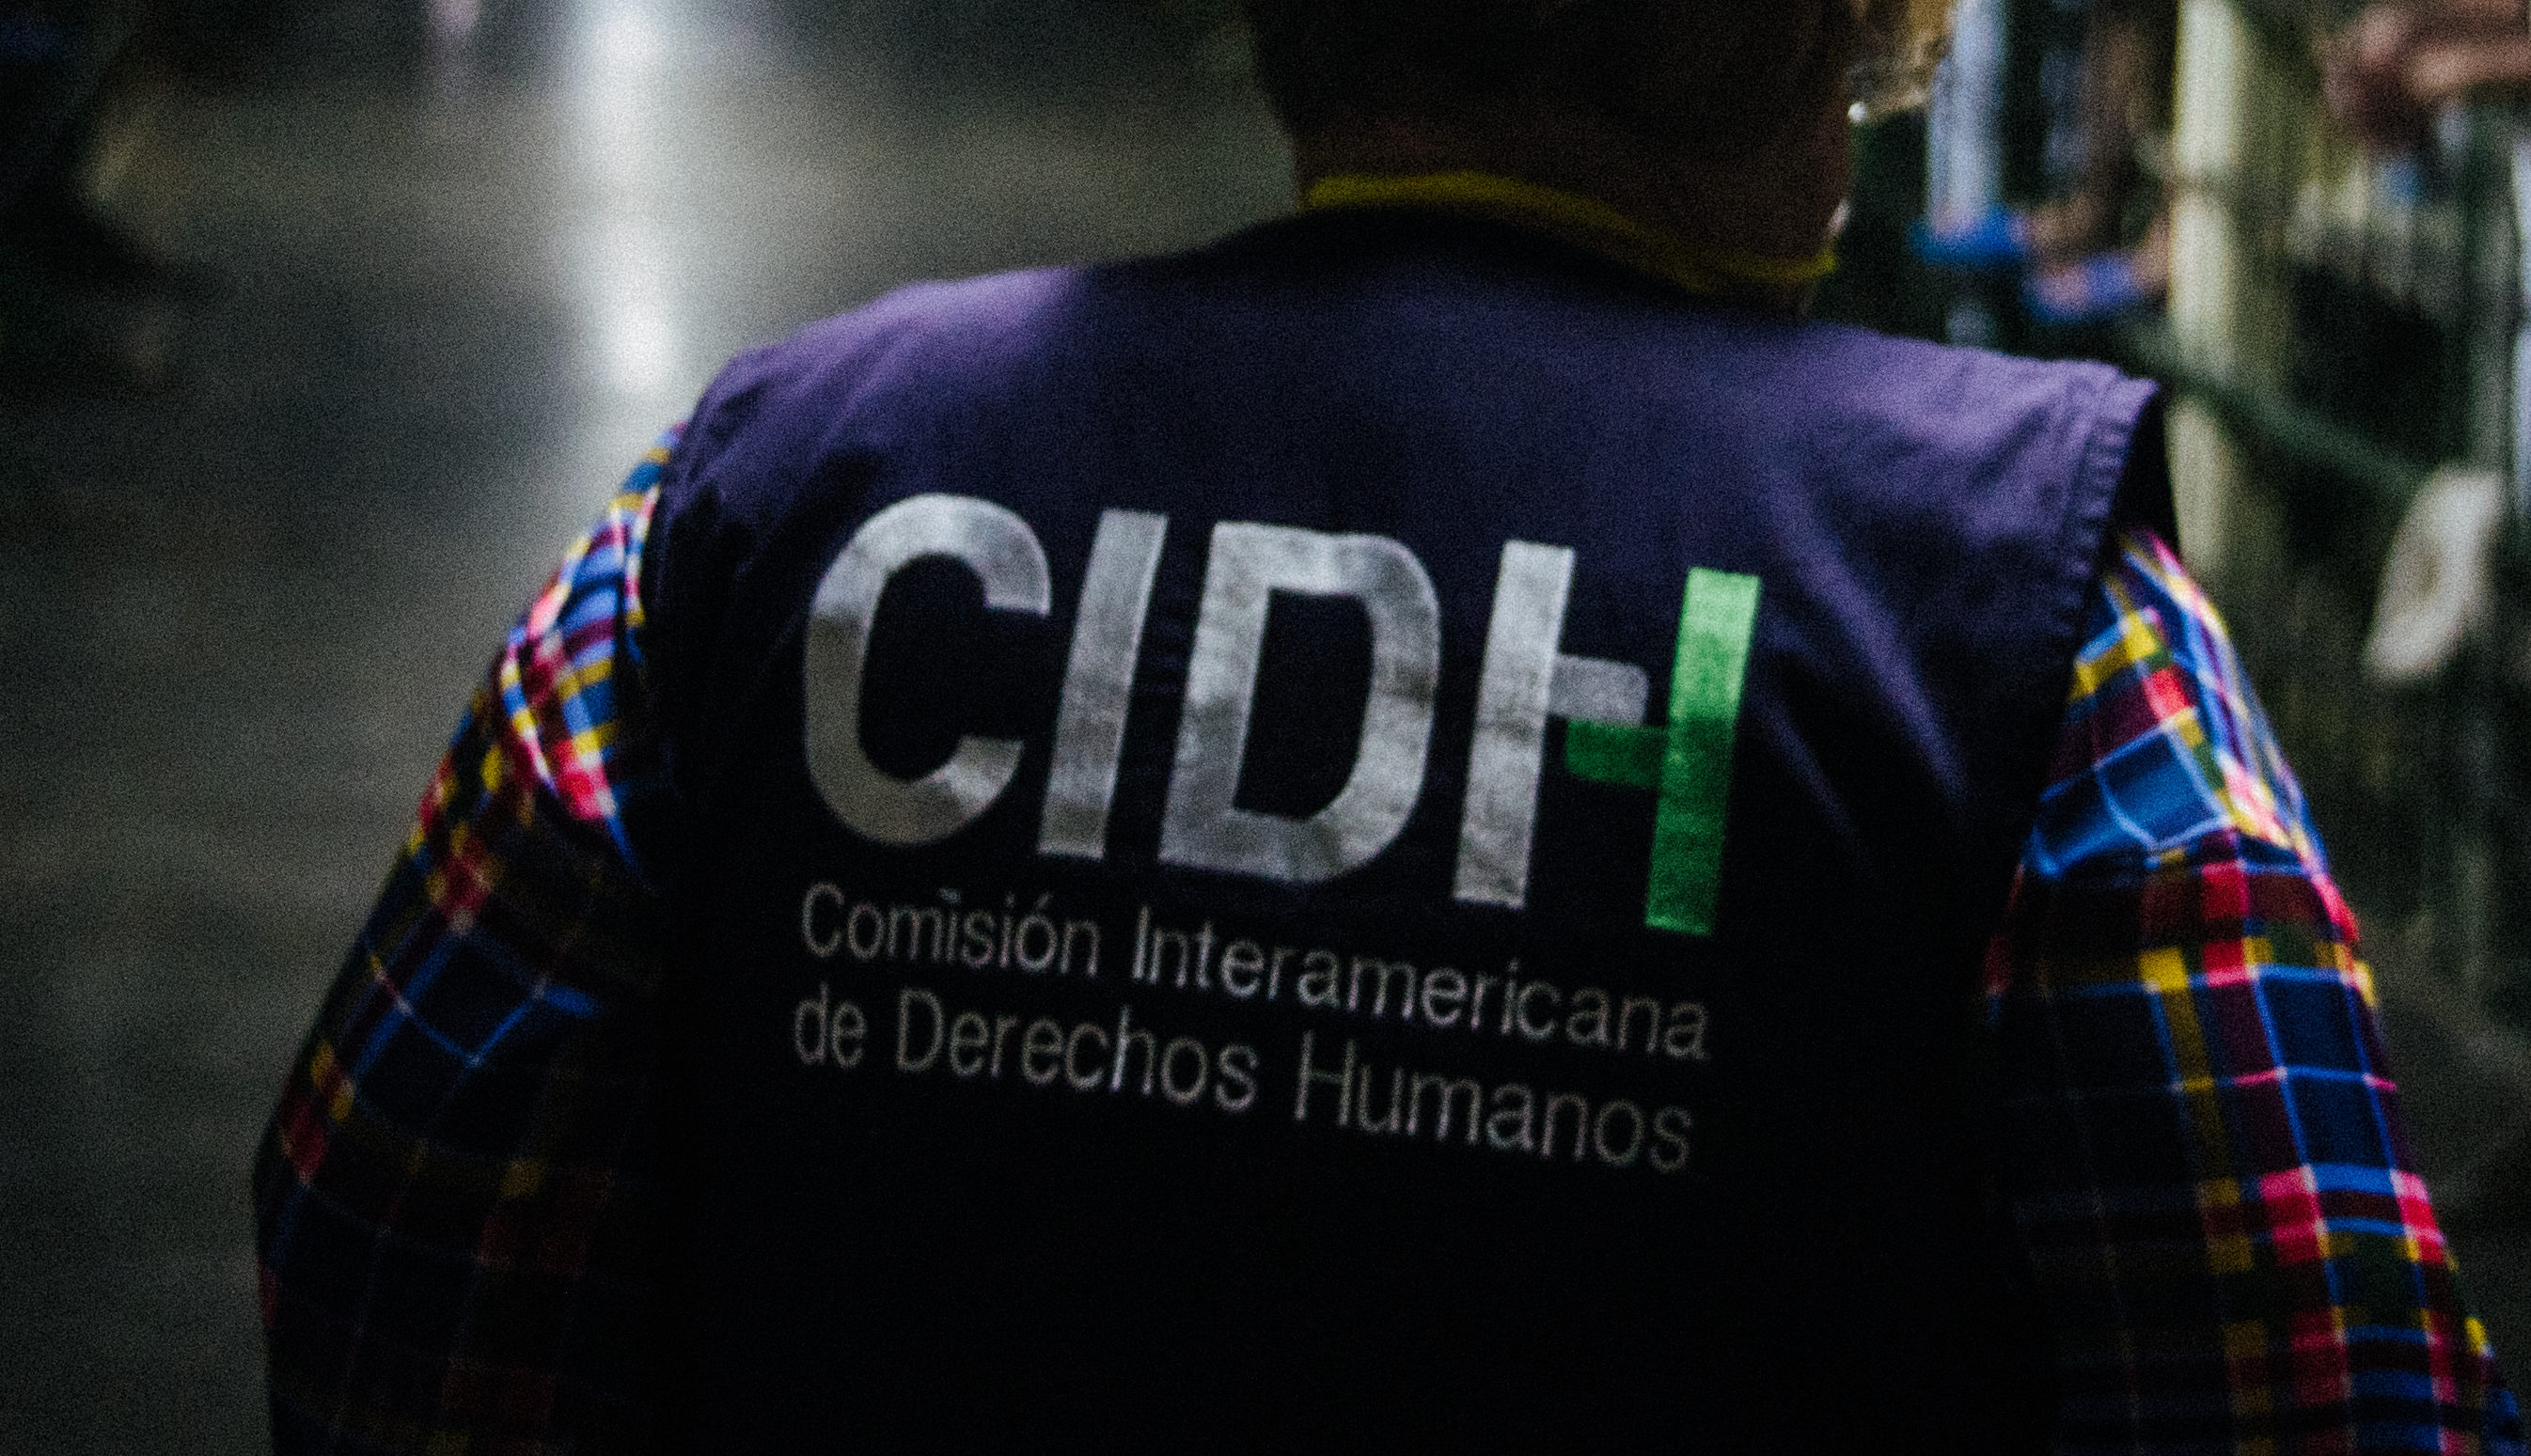 La Comisión Interamericana de Derechos Humanos es un organismo dependiente de la Organización de los Estados Americanos, creado para promover la observancia y defensa de los derechos humanos. Foto: CIDH.